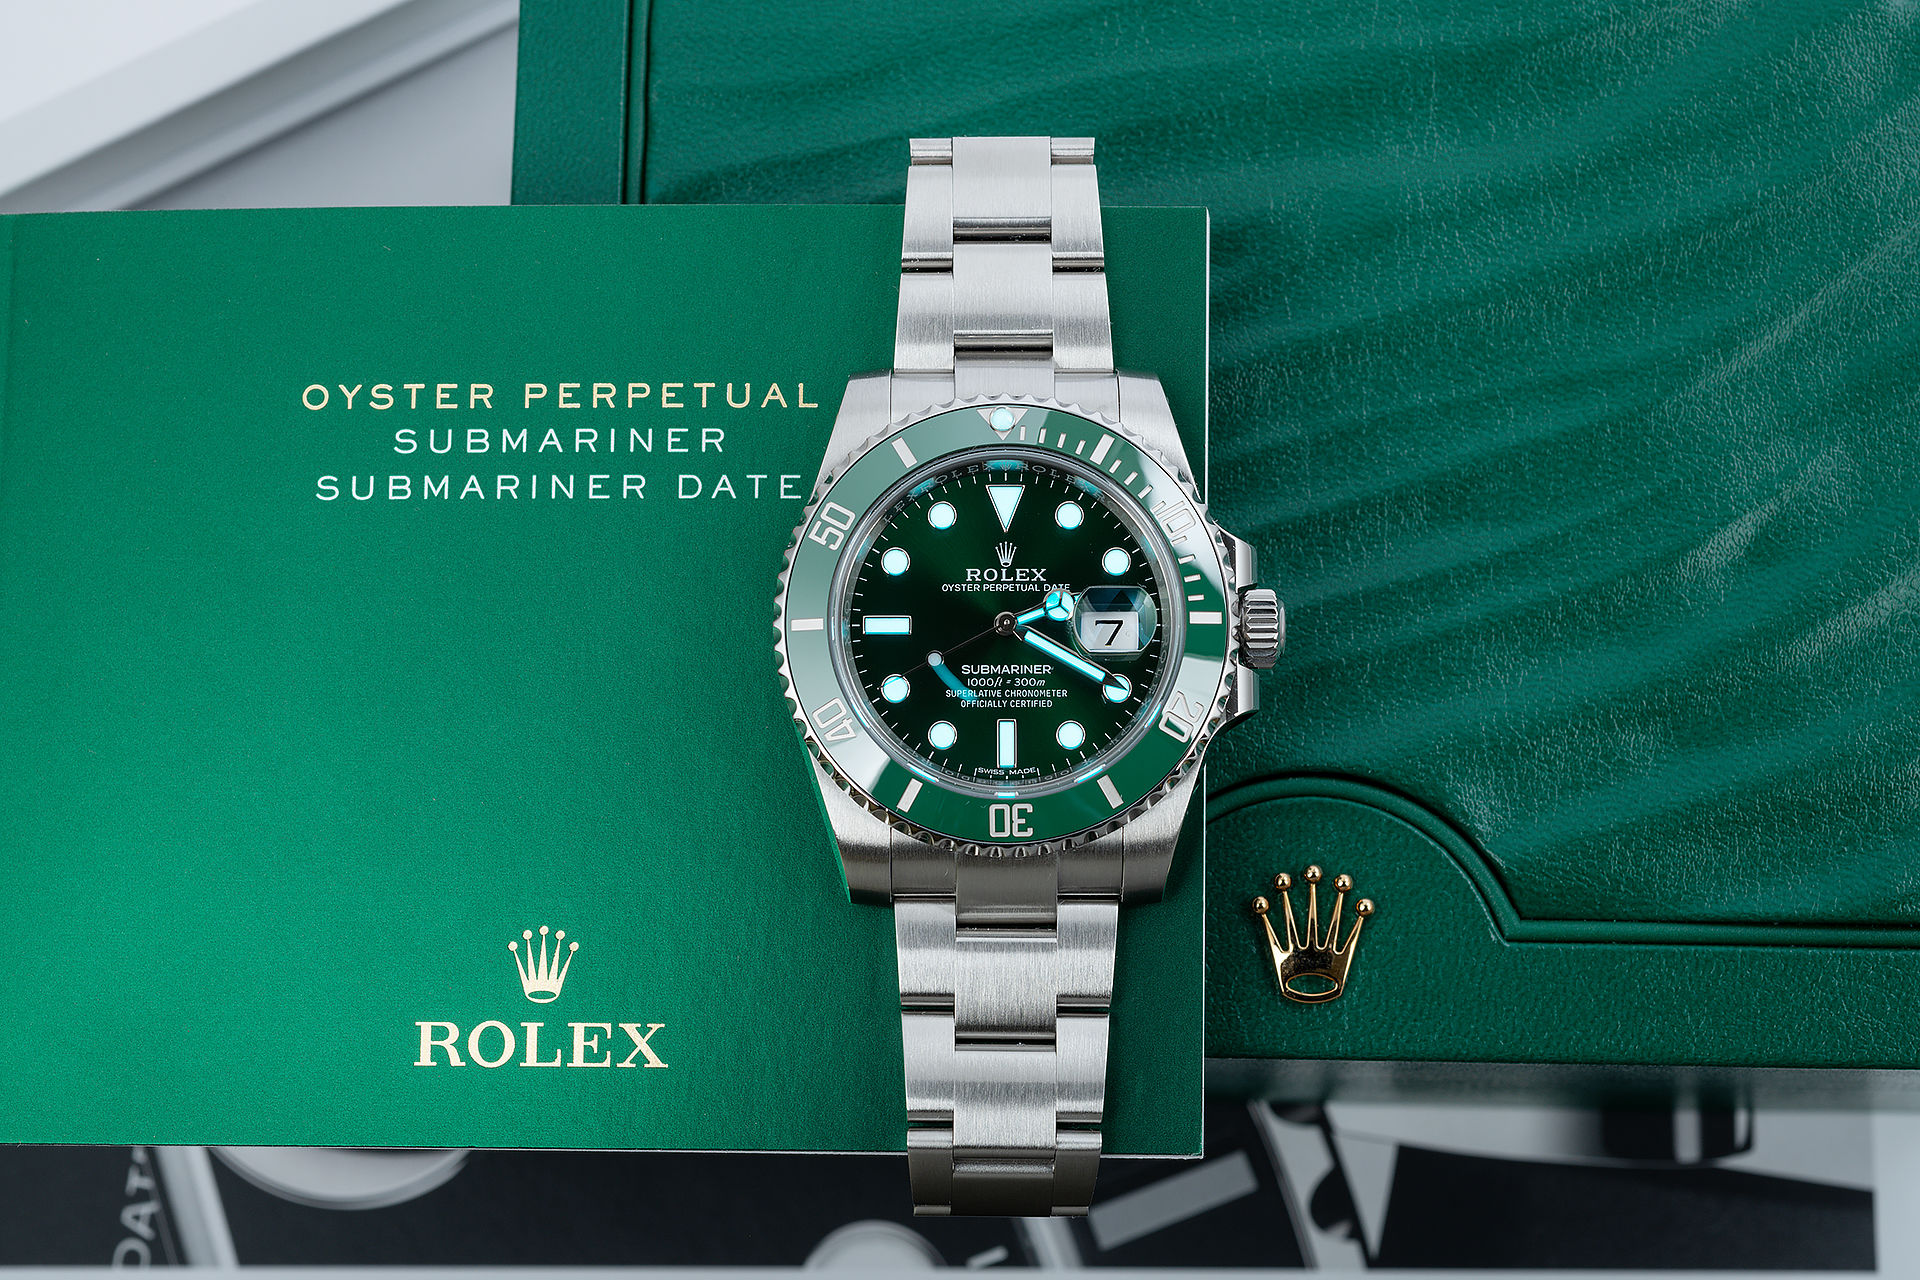 ref 116610LV | Under Rolex Warranty | Rolex Submariner Date